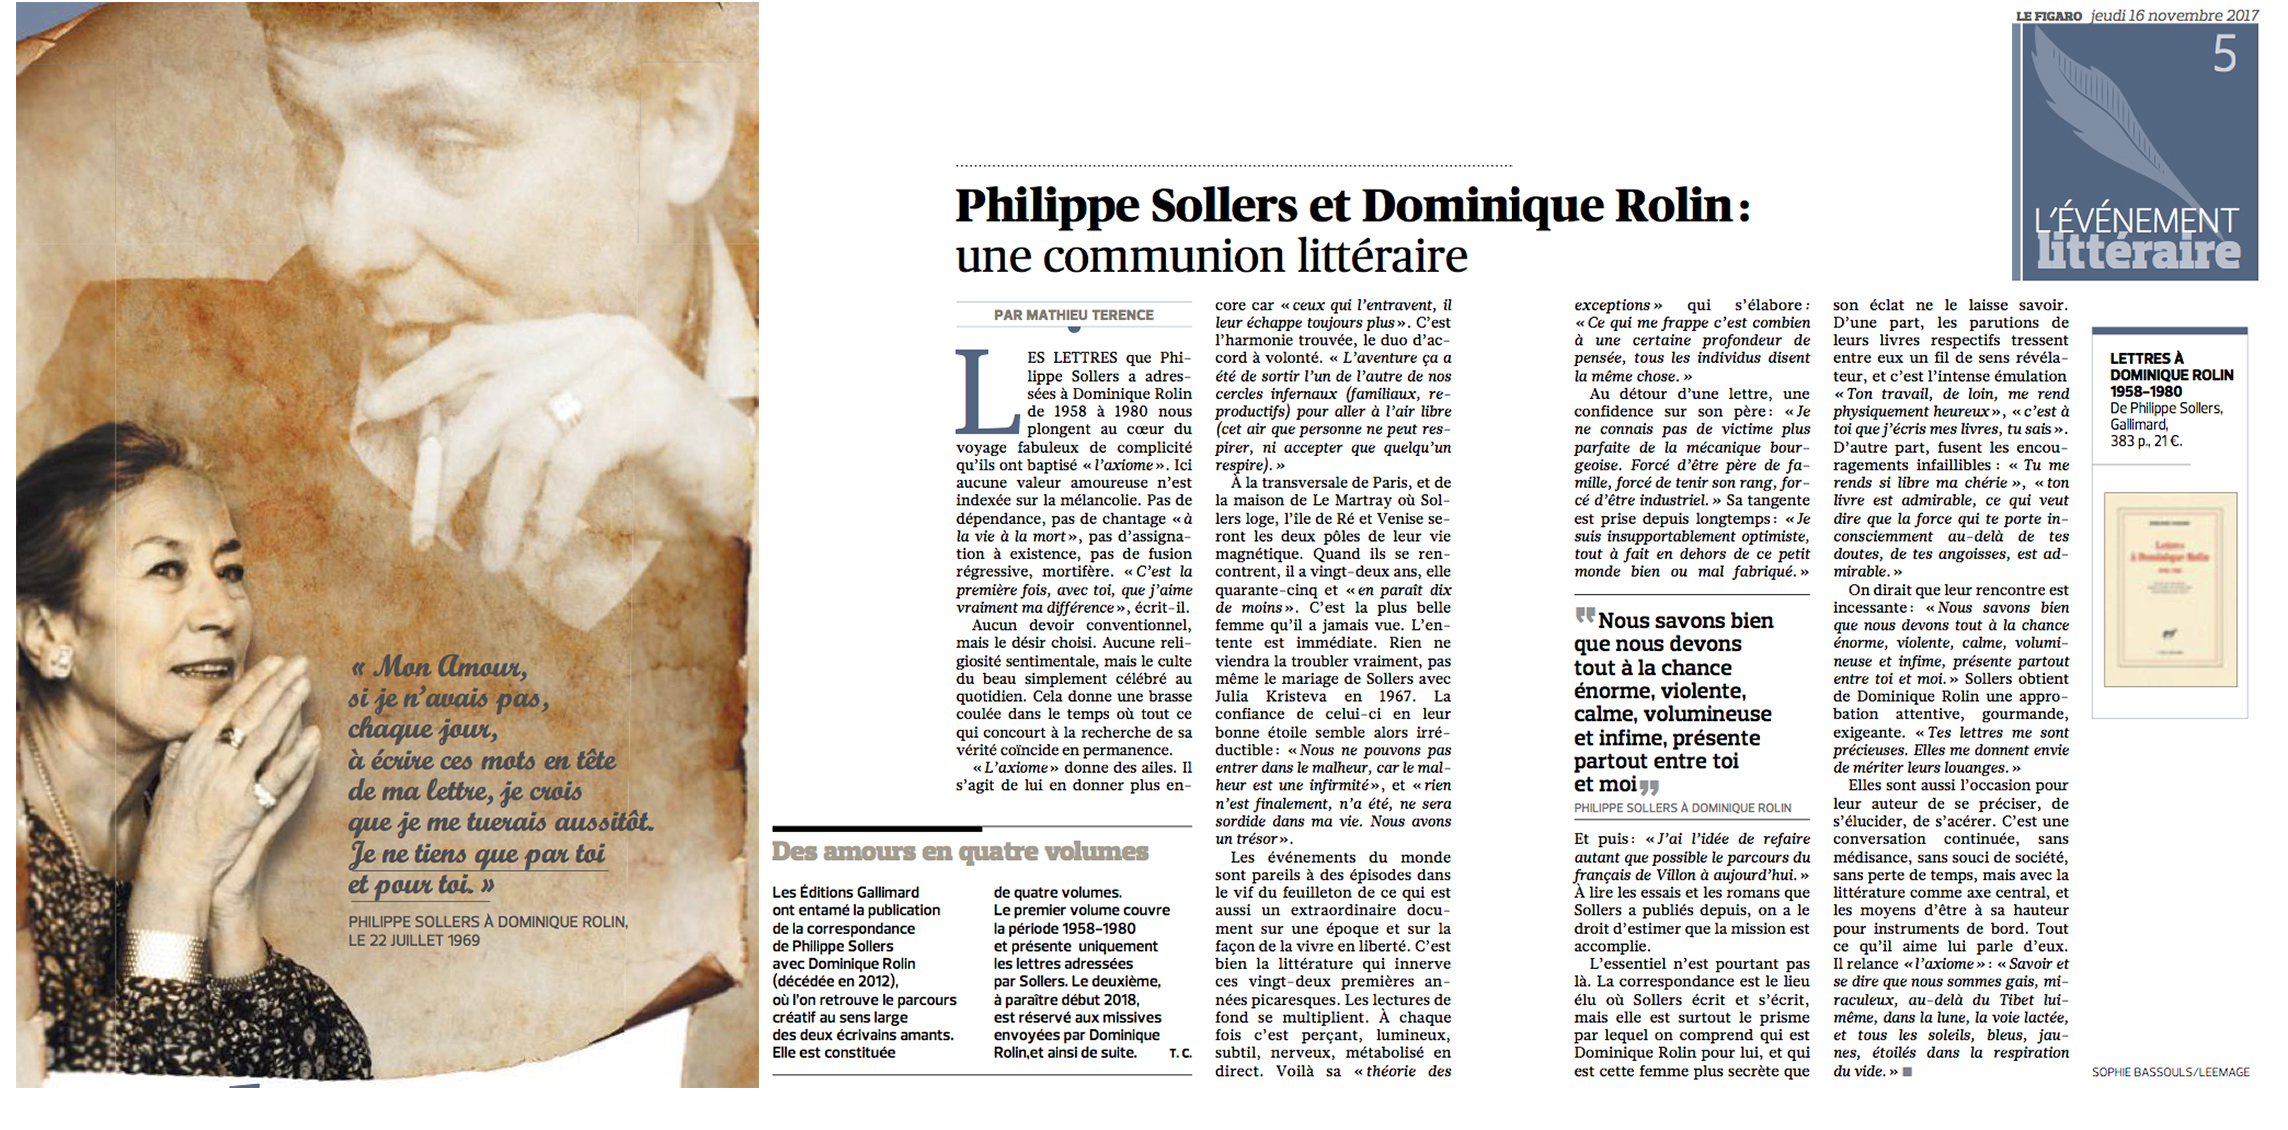   Philippe Sollers et Dominique Rolin : une communion littéraire 